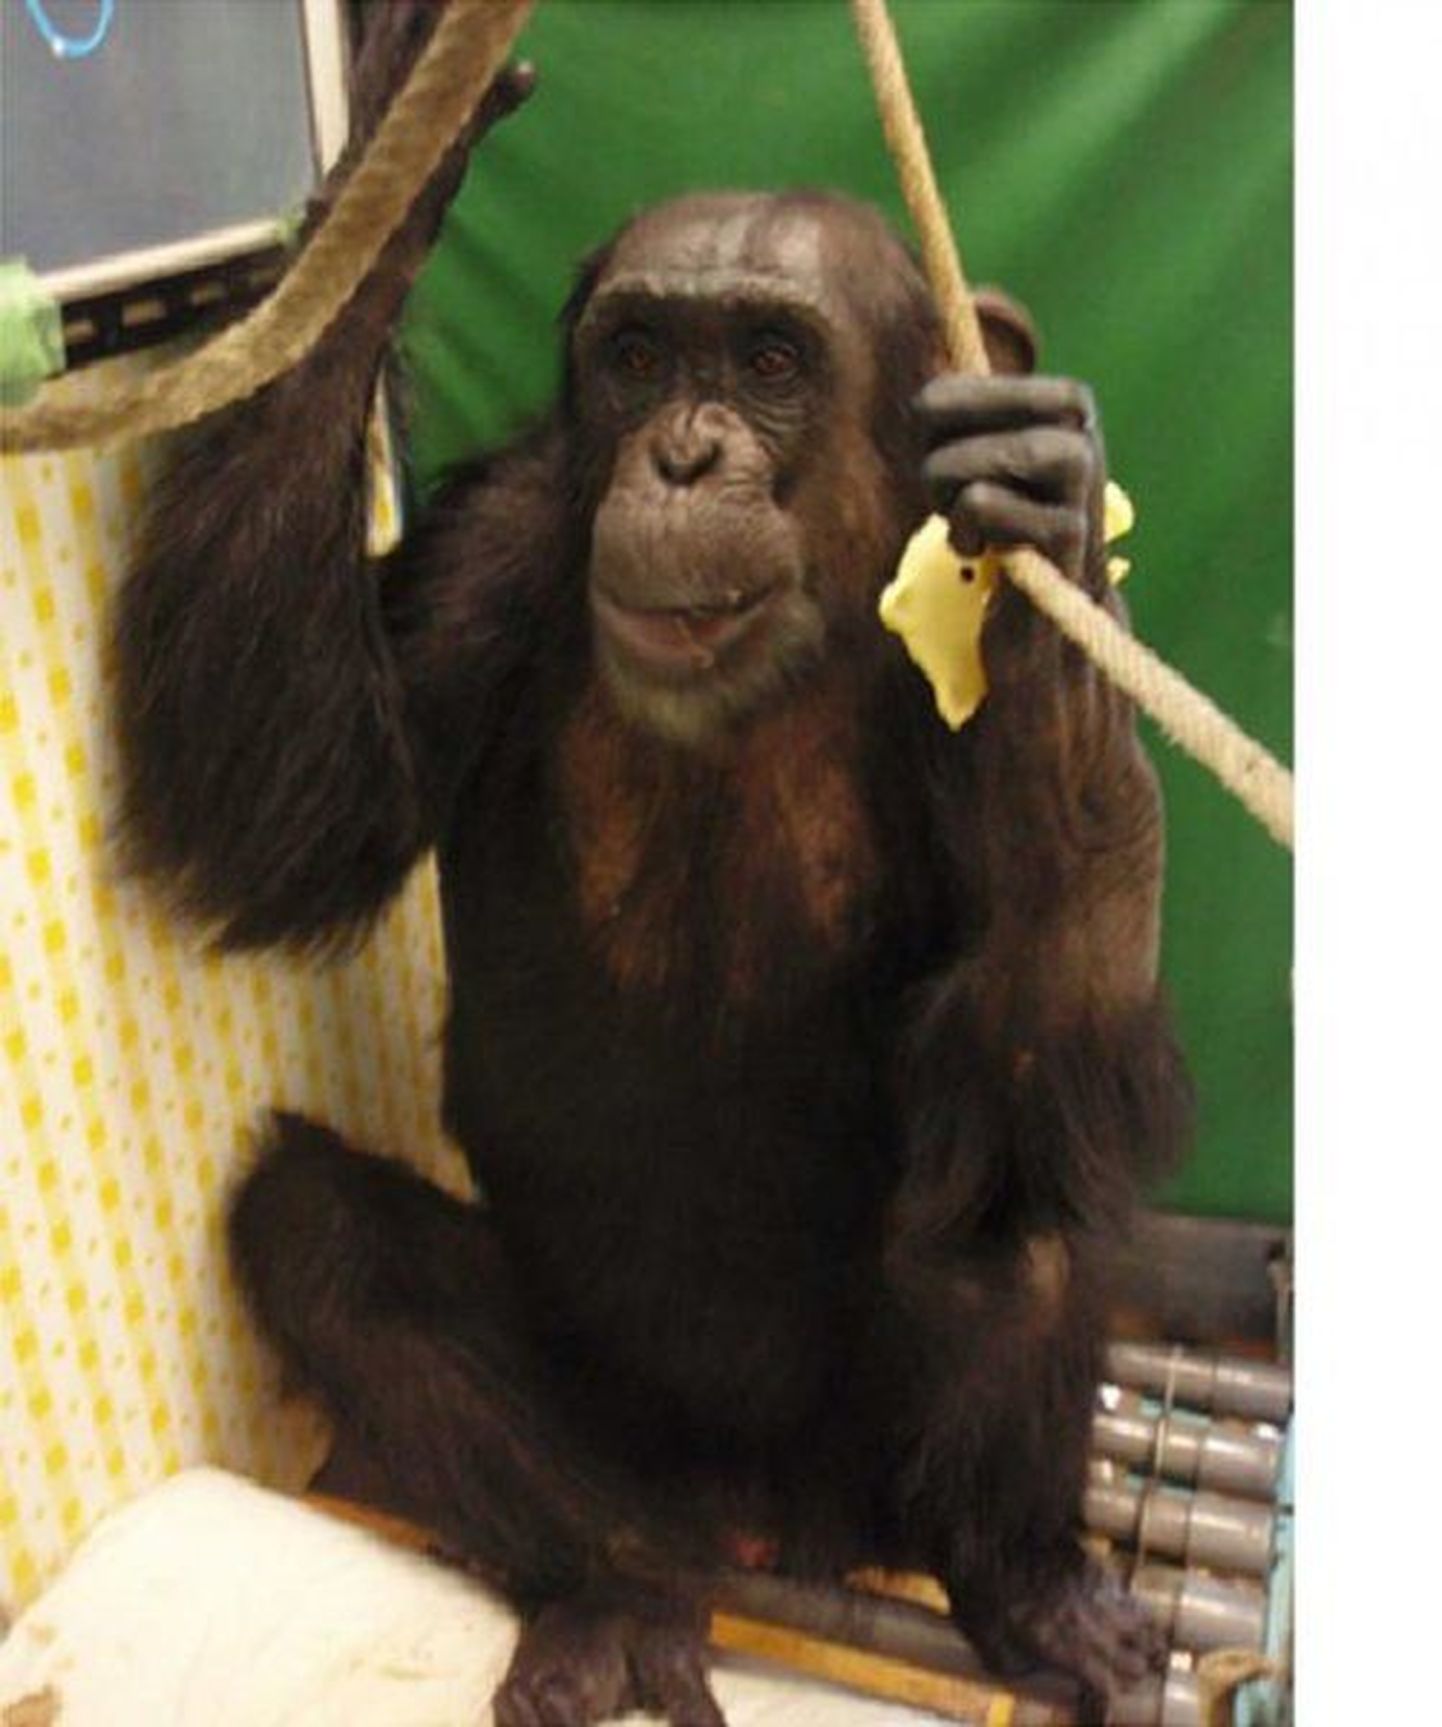 Šimpans Reo hoiab end pärast 14 kuud kestnud halvatust köite toel istukil.